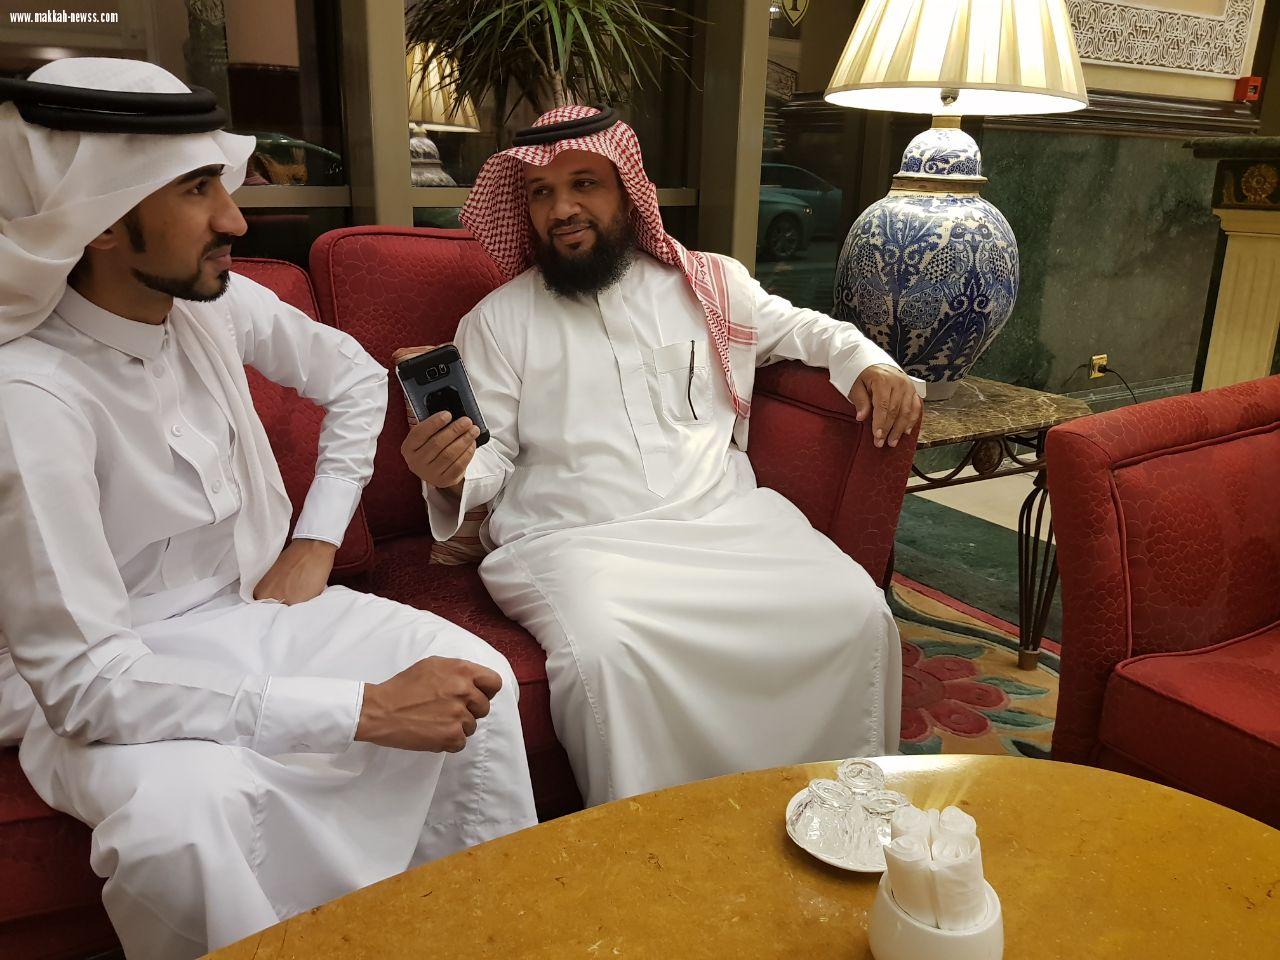 شبكة نادي الصحافة السعودي يستضيف أول رحالة عربي يقطع دول الخليج بدراجته في ستة آيام